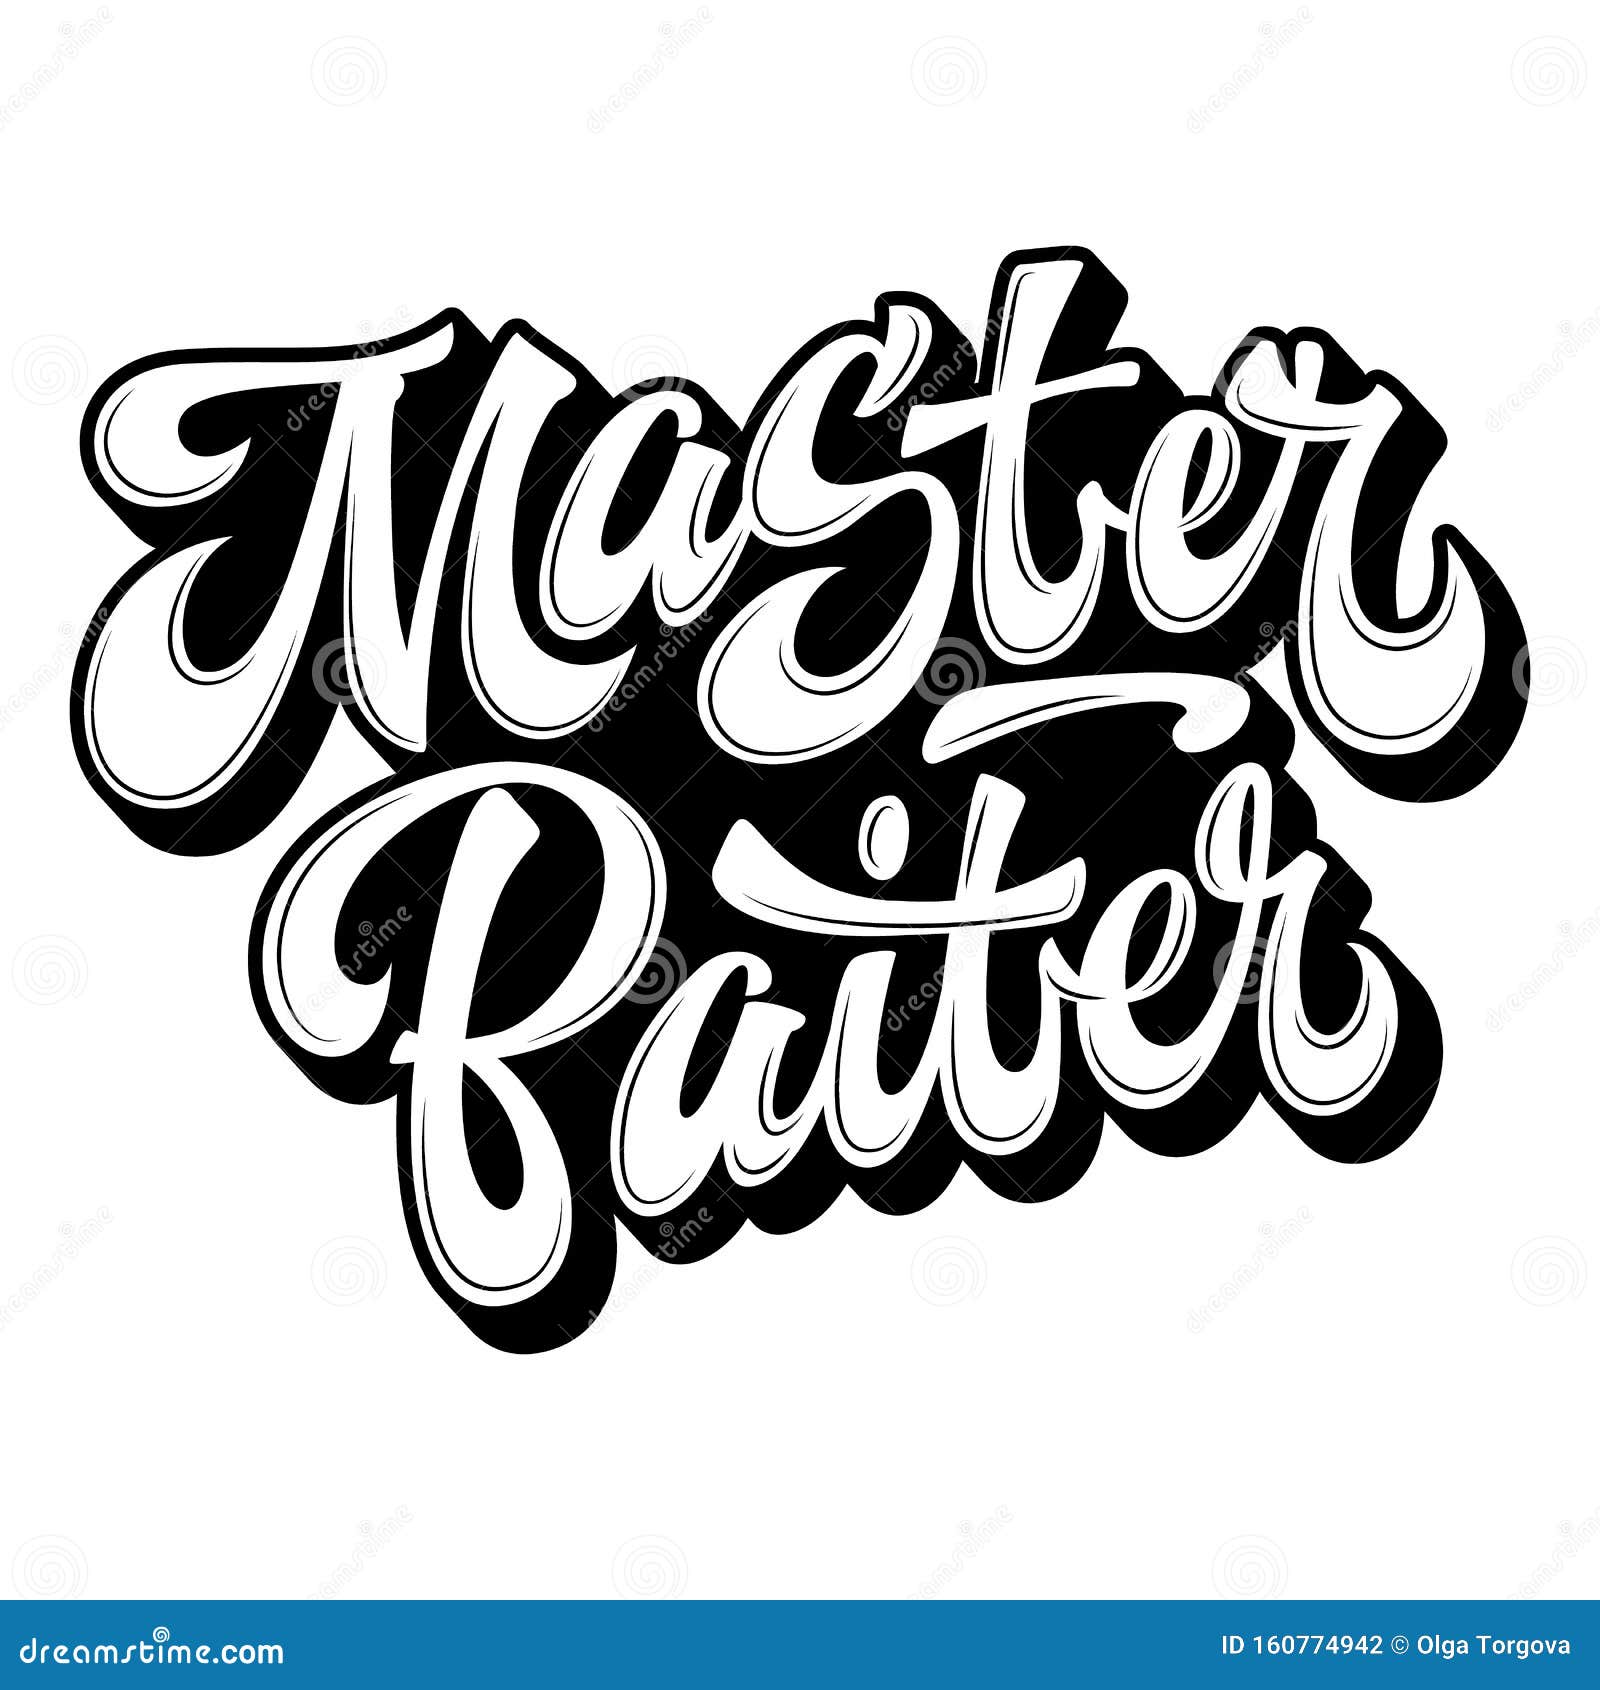 Master Baiter - Hand Drawn Lettering Logo Phrase. Stock Vector